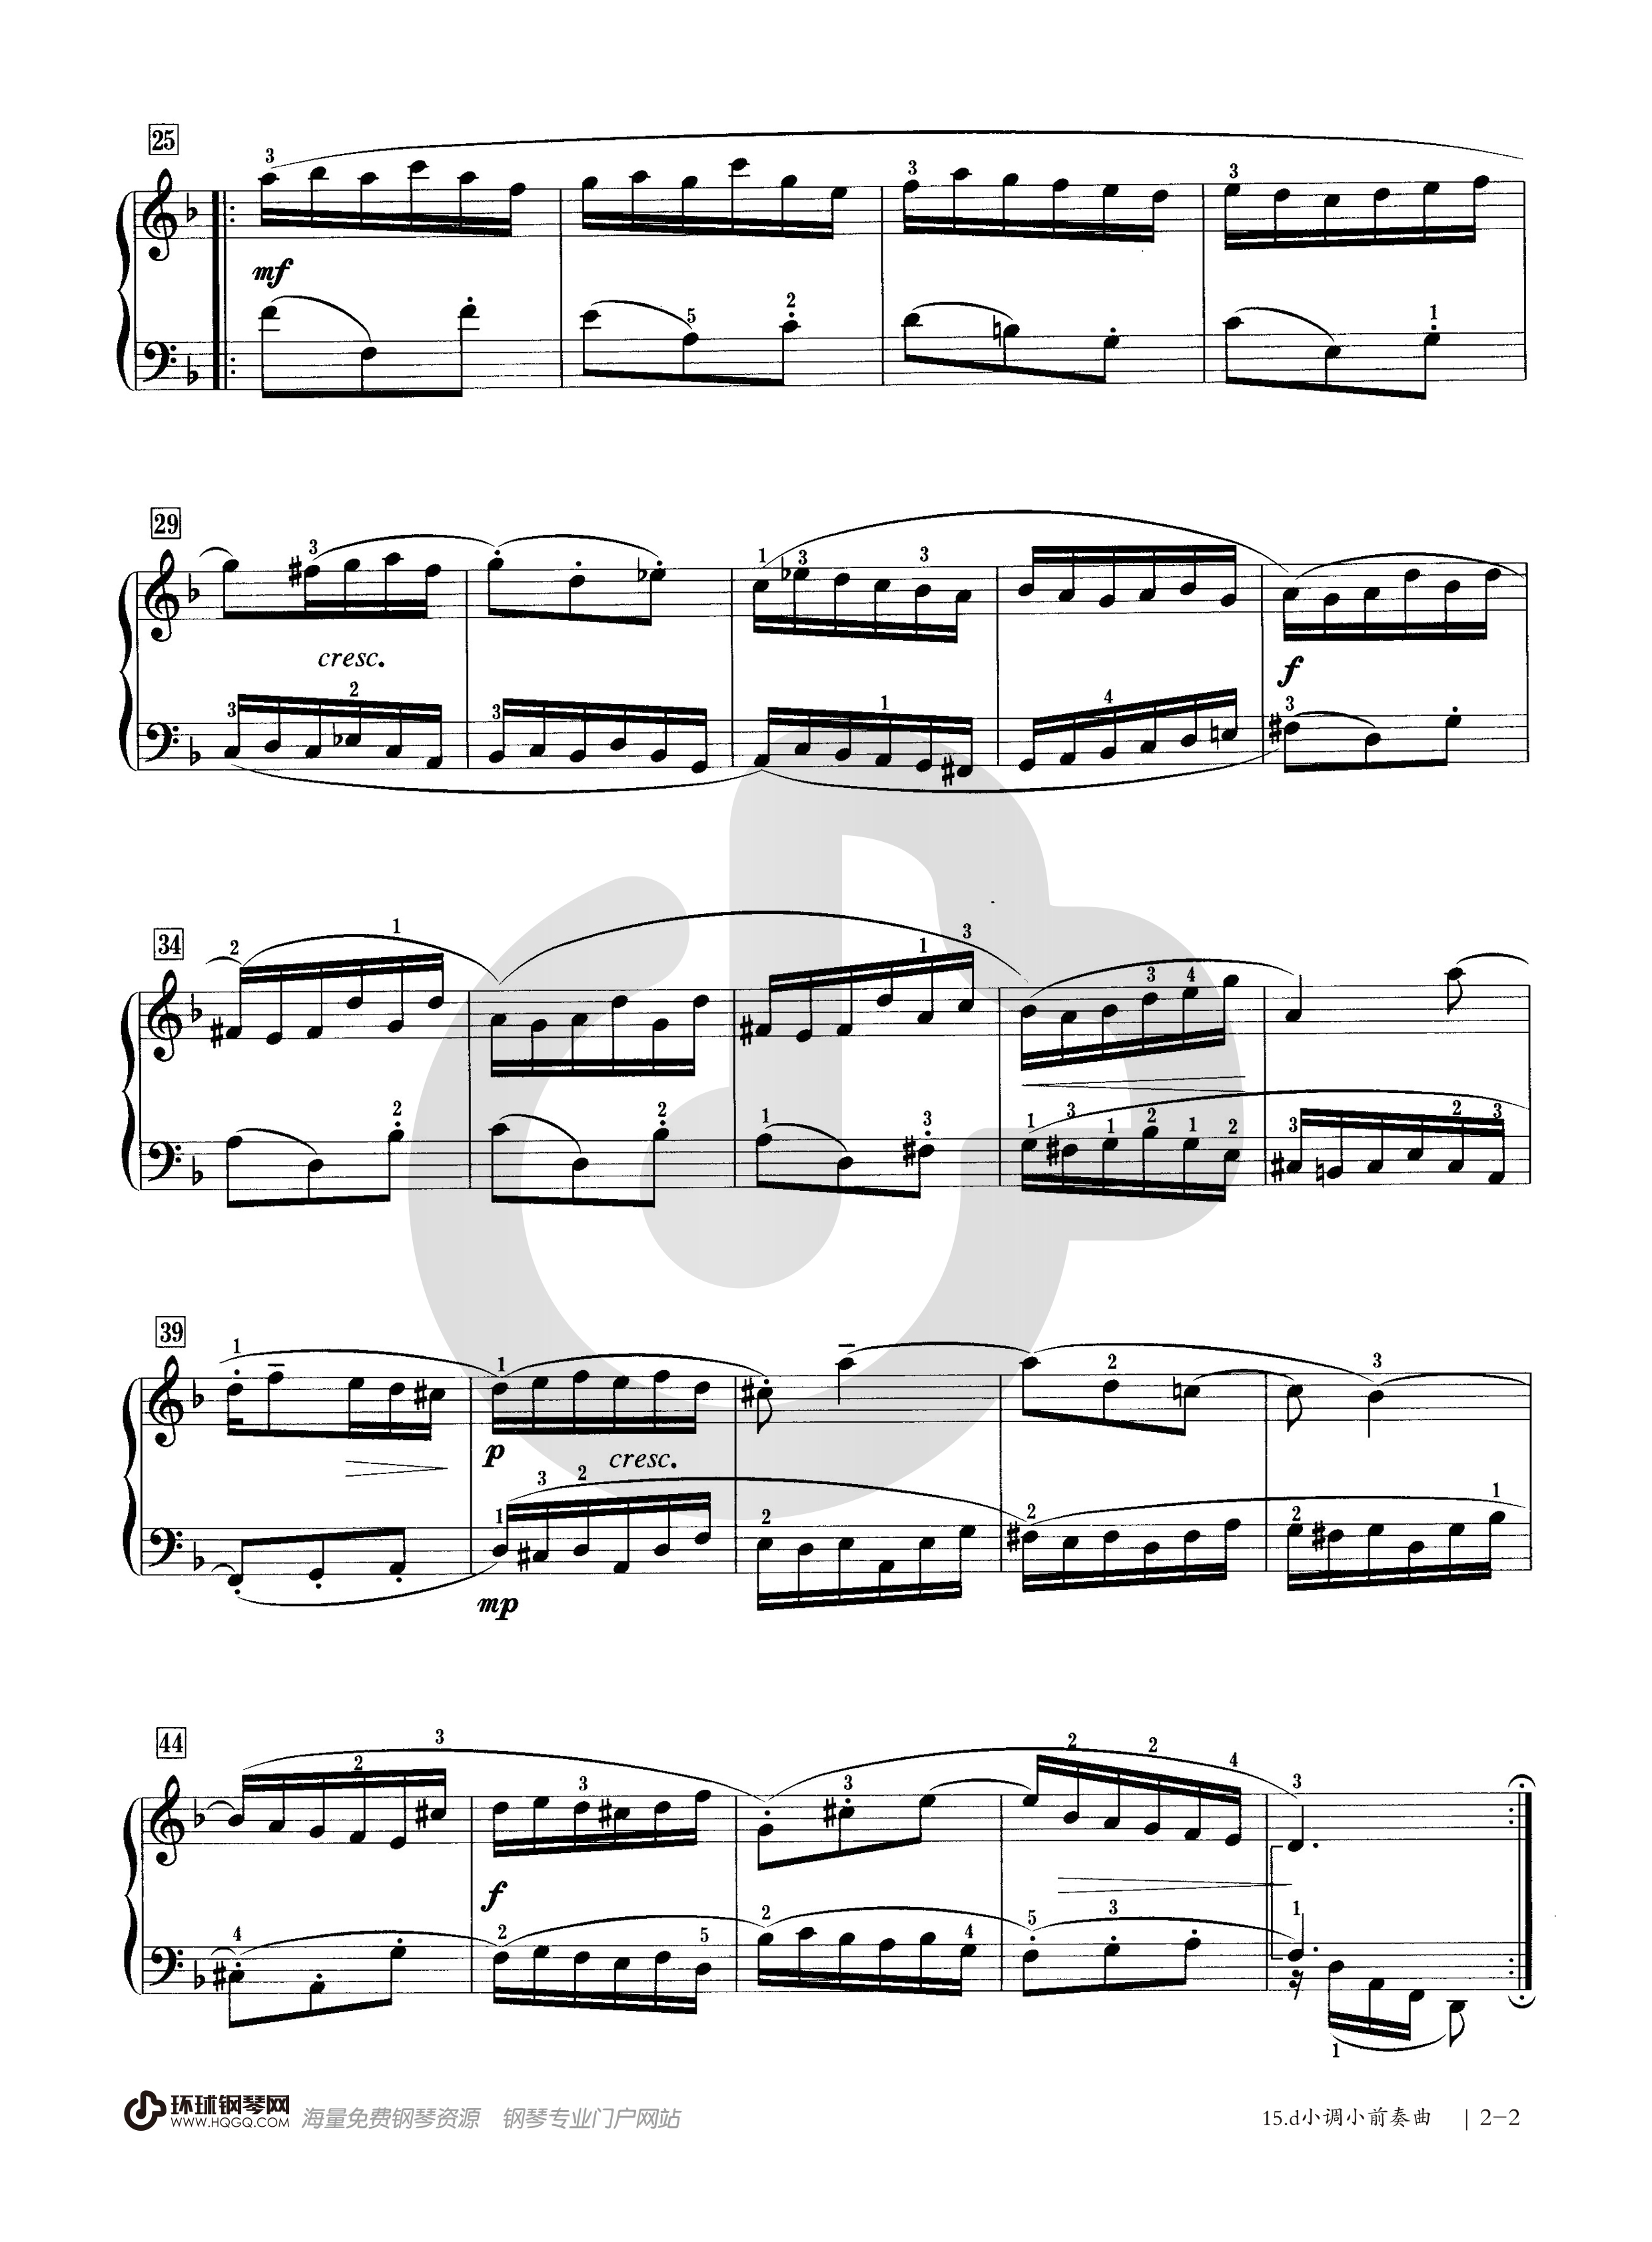 钢琴考级曲目二级前奏曲(钢琴二级的考试曲目)